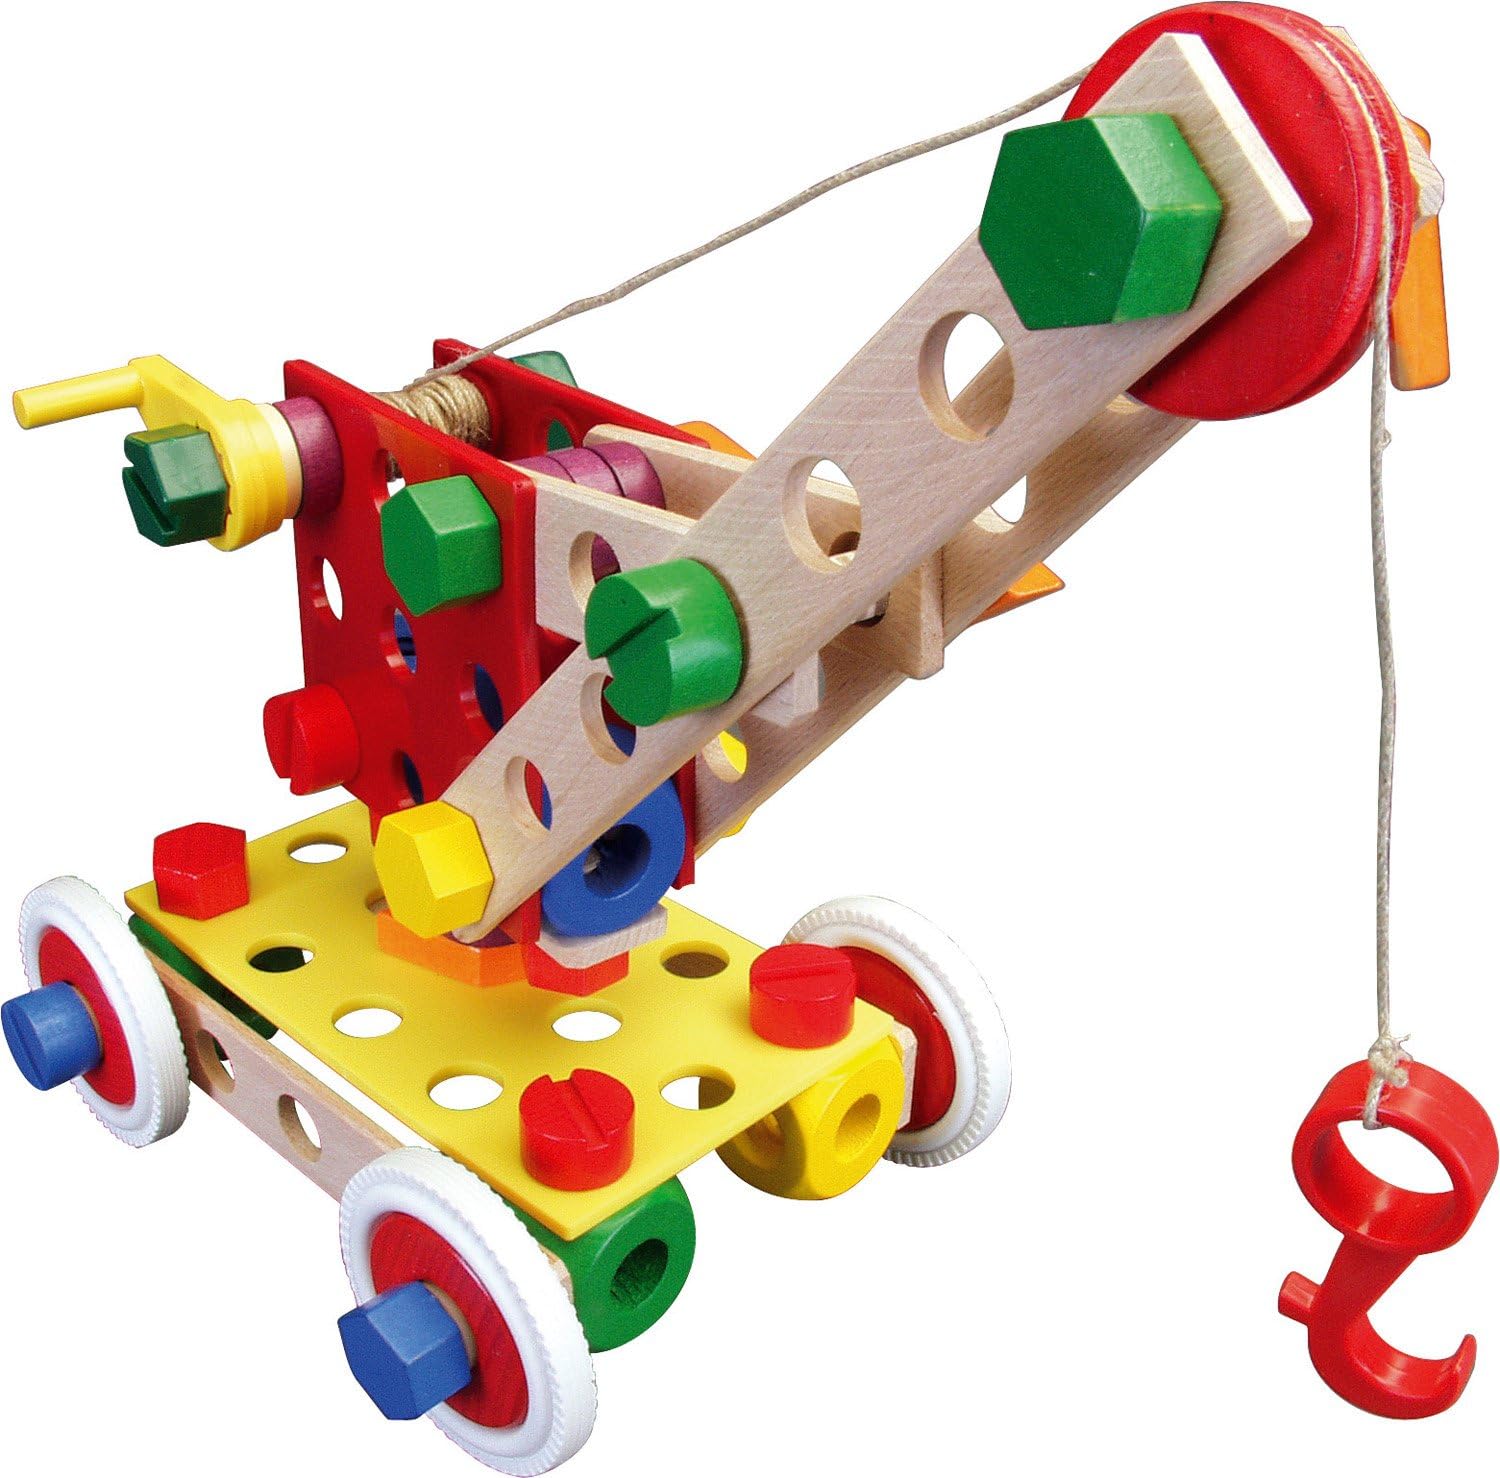 Подарок ребенку на 3 4 года. Конструктор "малыш". Развивающие игрушки. Развивающий конструктор для детей. Игрушки для детей 5-6 лет.